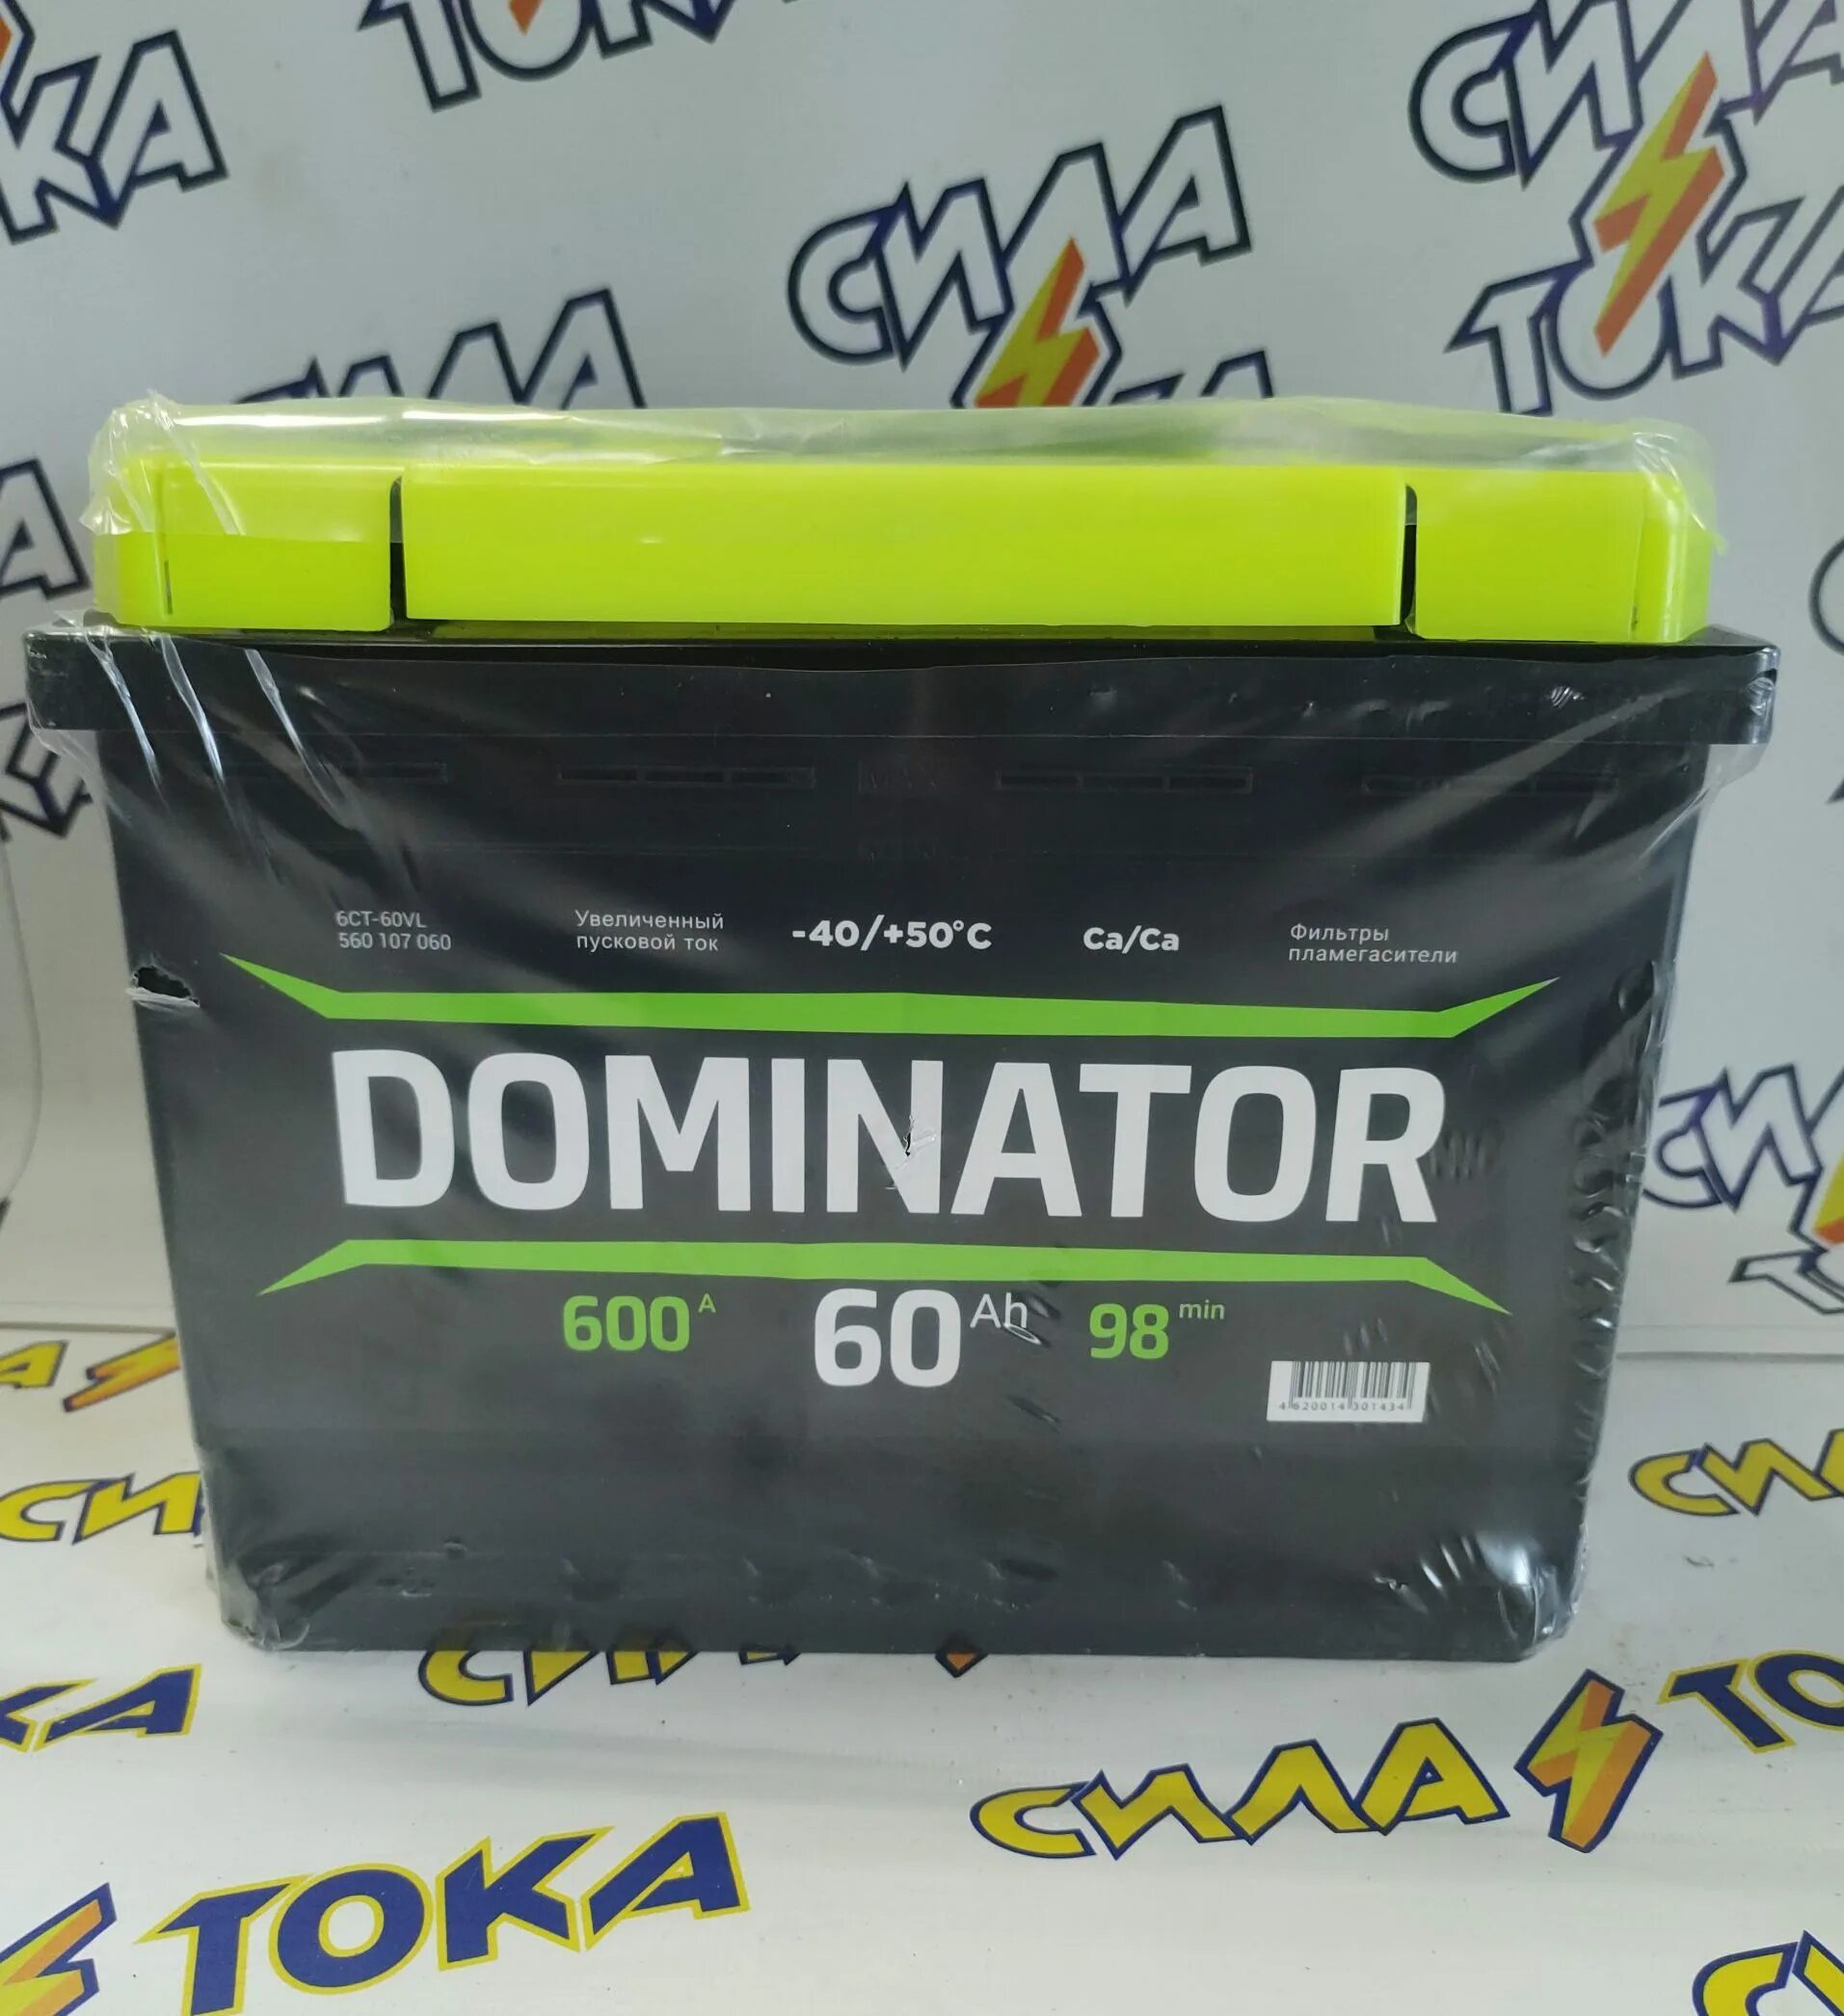 Купить аккумуляторы 600. Аккумулятор Dominator 60. Доминатор 60 600. Аккумулятор Dominator 600. АКБ Доминатор 60 описание.